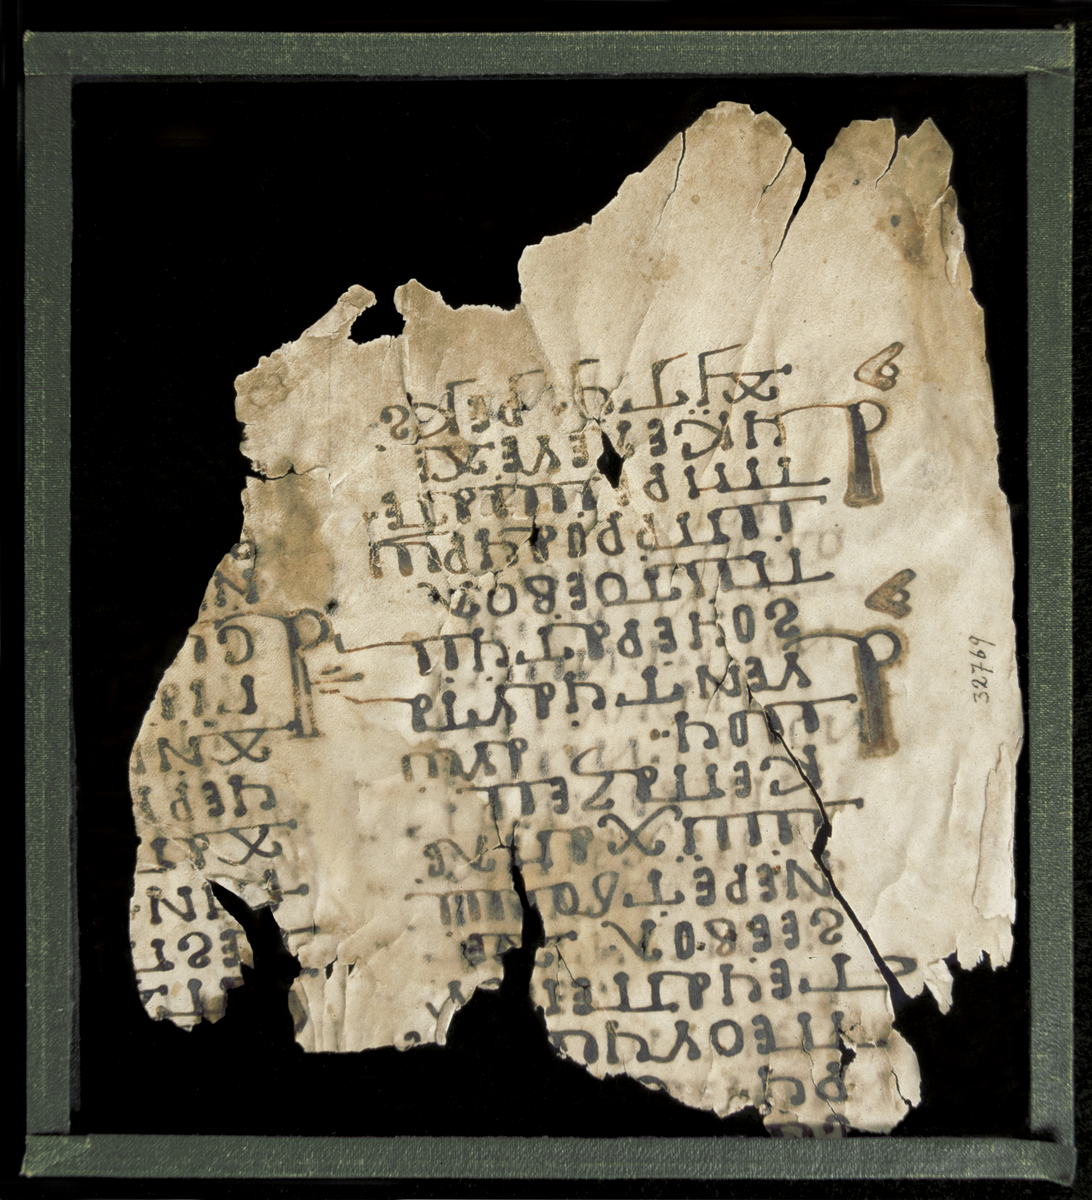 EtnoNo: 32769.
Kalveskinn, fragment m/ innkrift på begge sider, koptisk.